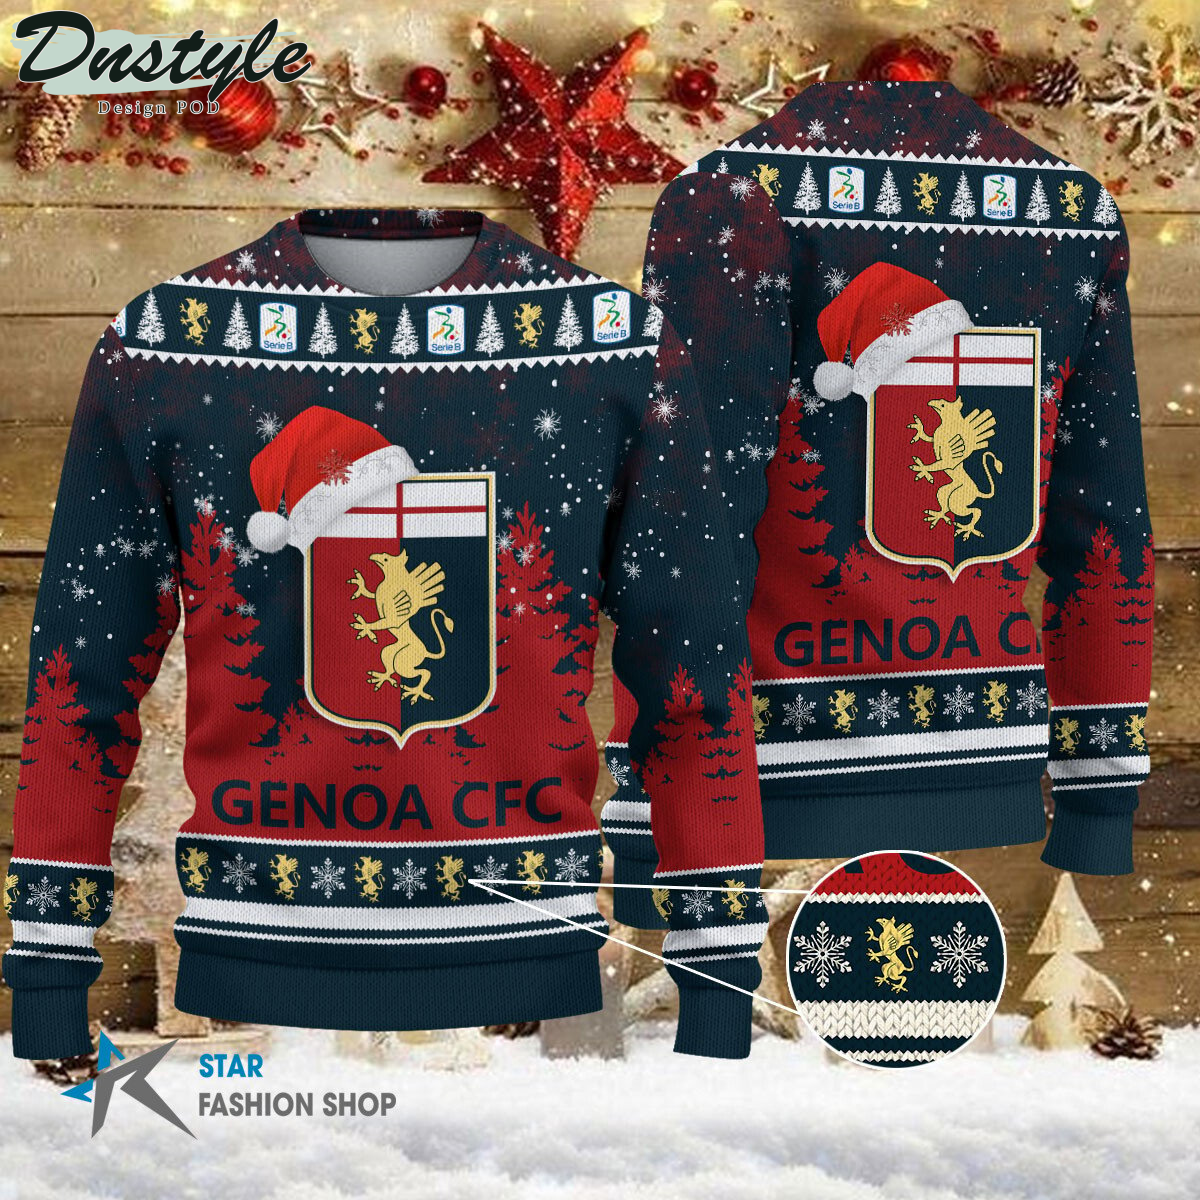 Hellas Verona FC brutto maglione natalizio